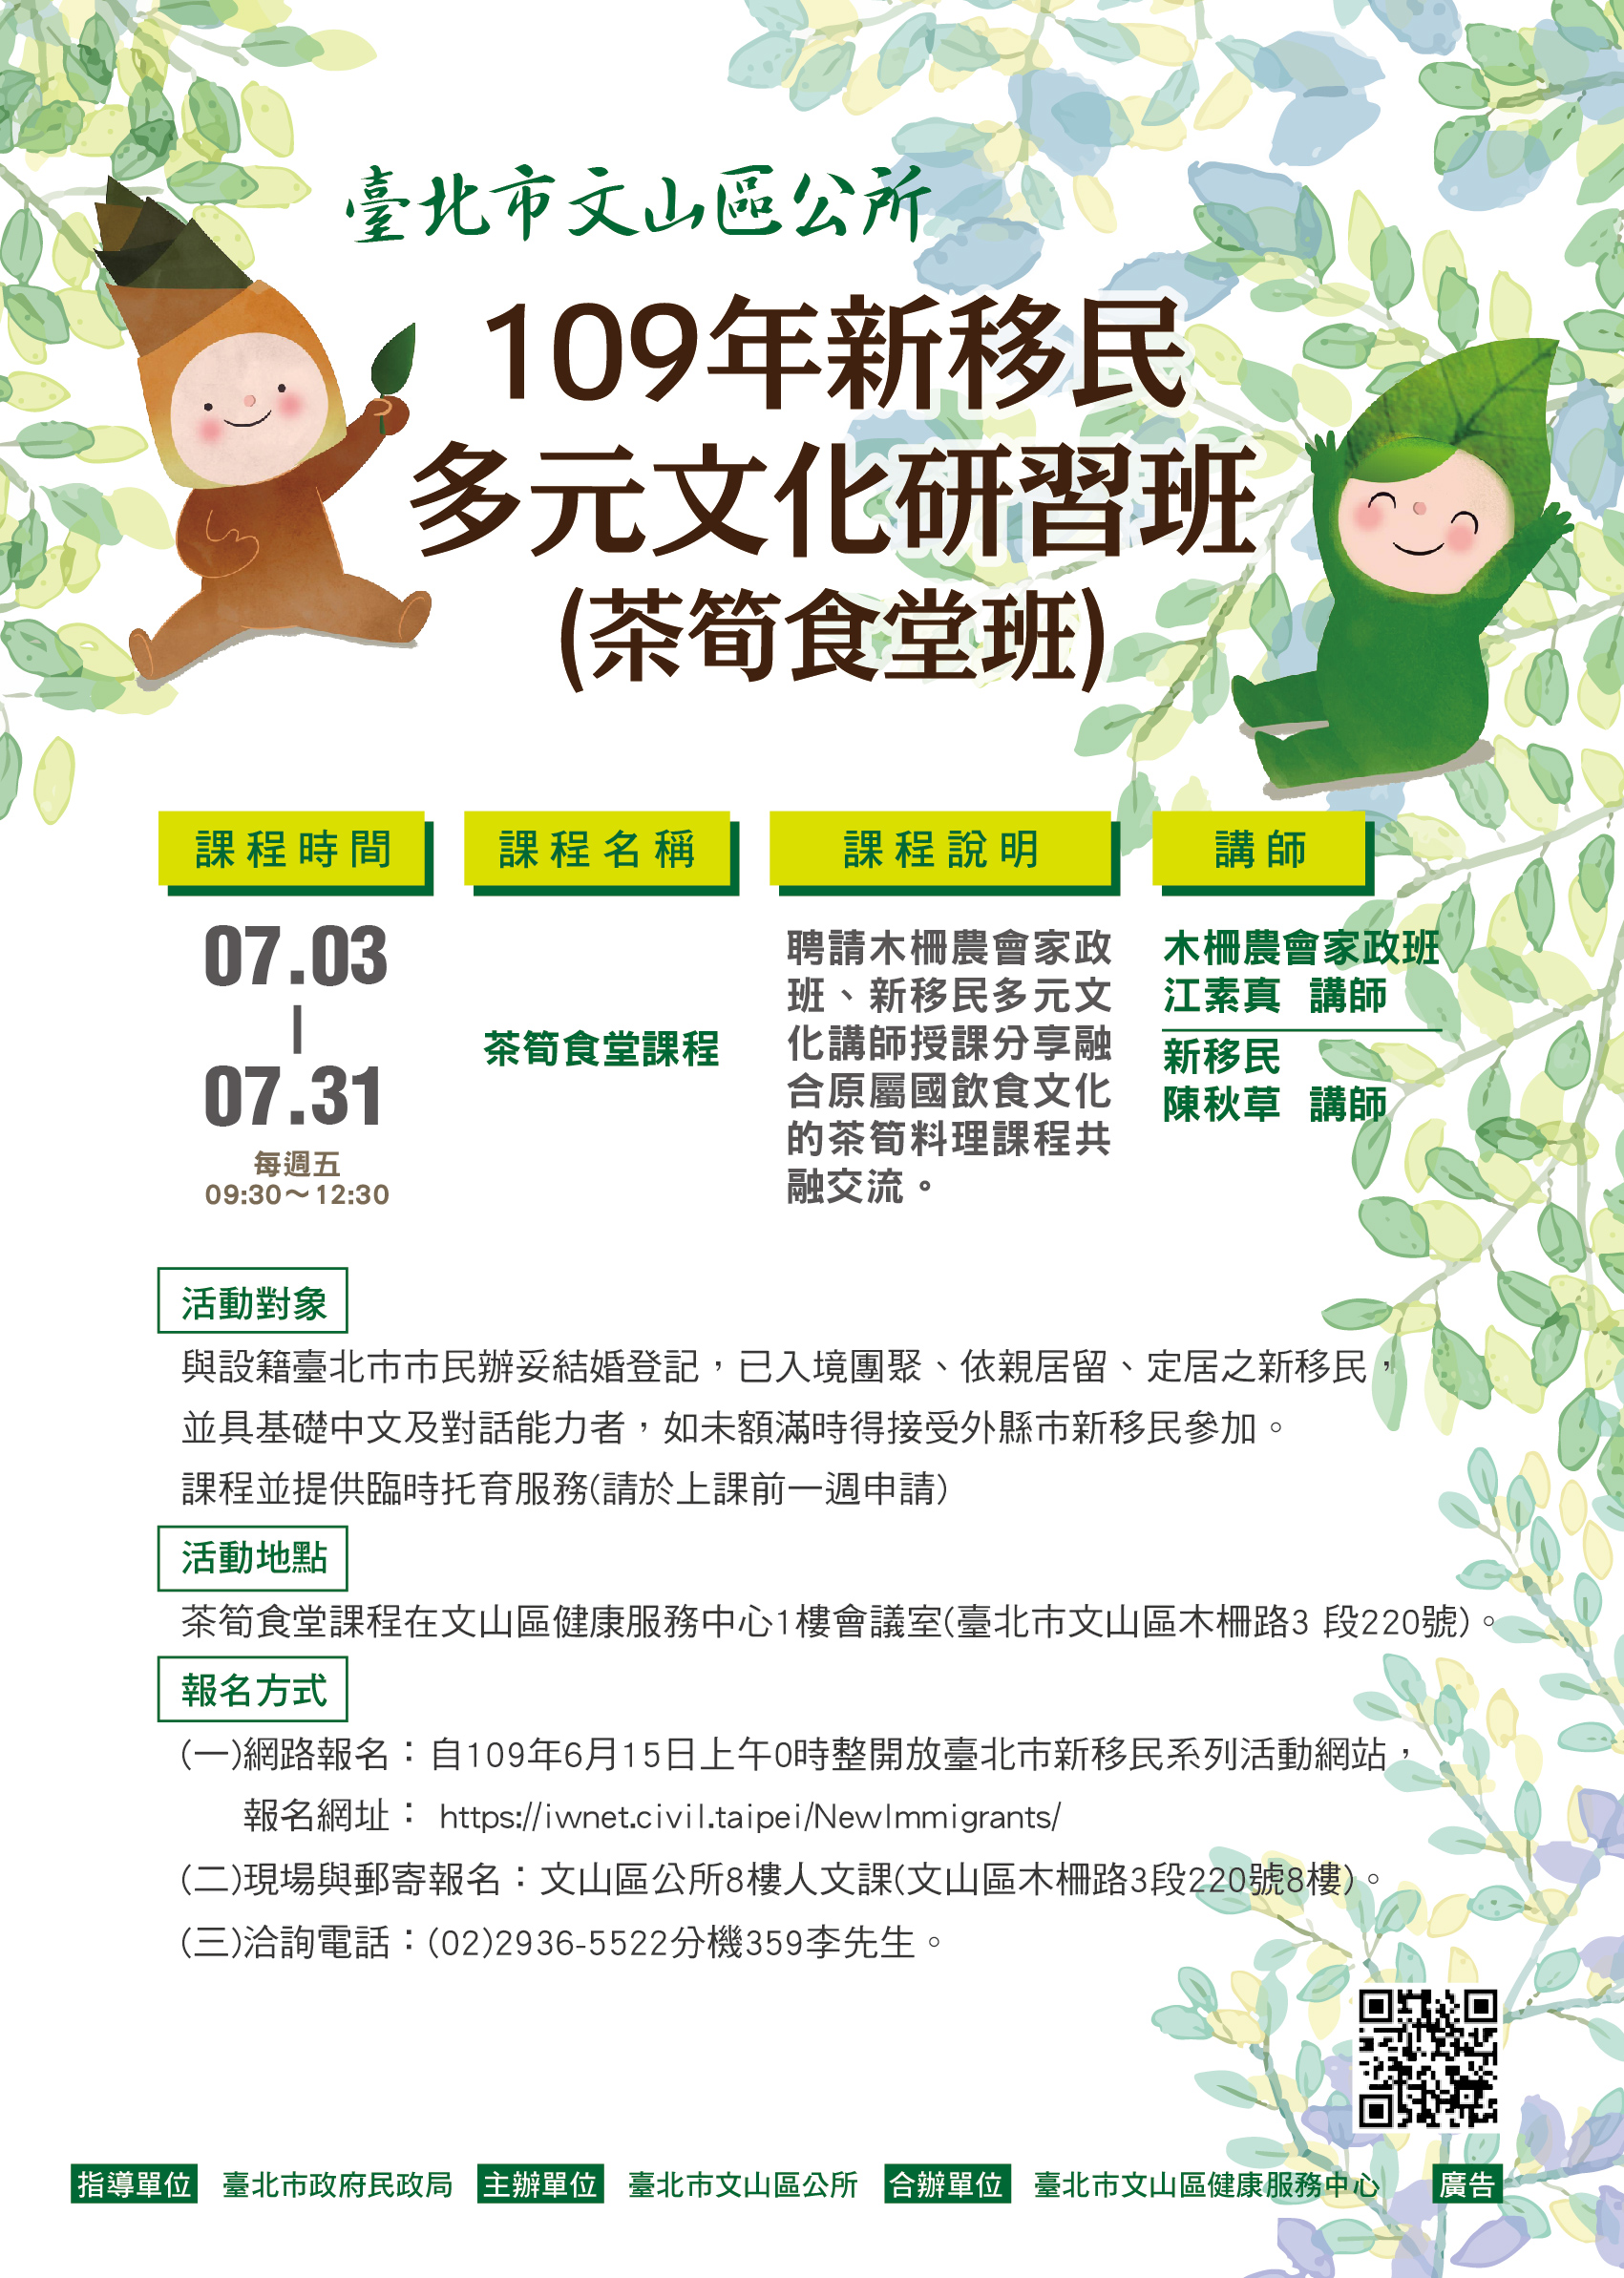 Khóa học về「Ẩm thực trà và măng」dành cho Cư dân mới thành phố Đài Bắc